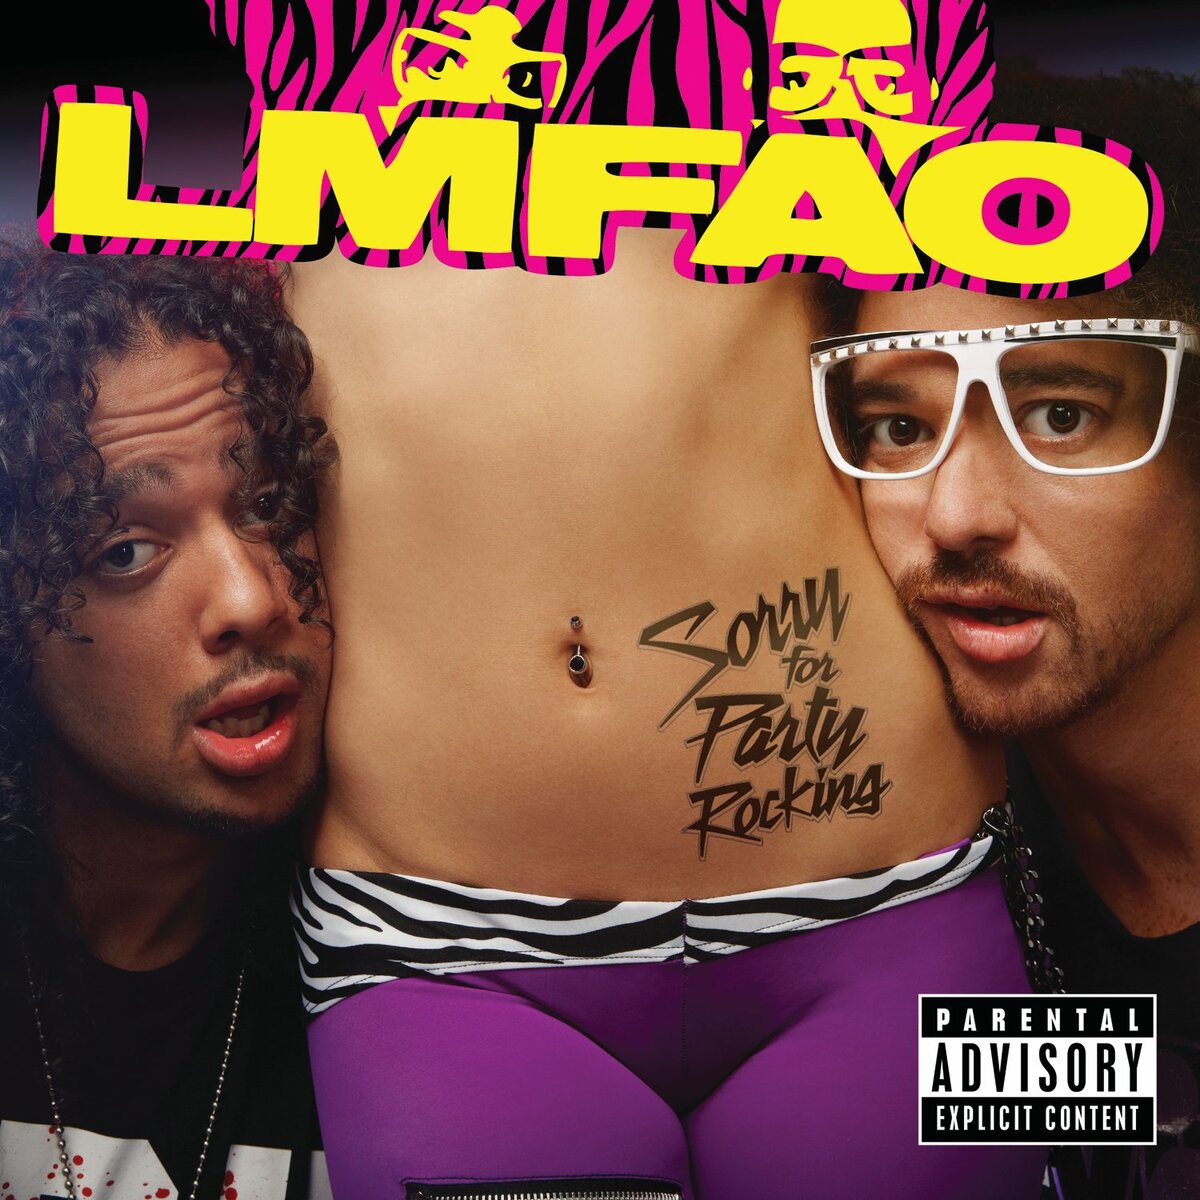 «Party Rock Anthem» от LMFAO признана второй песней десятилетия по итогам чарта Billboard Hot 100